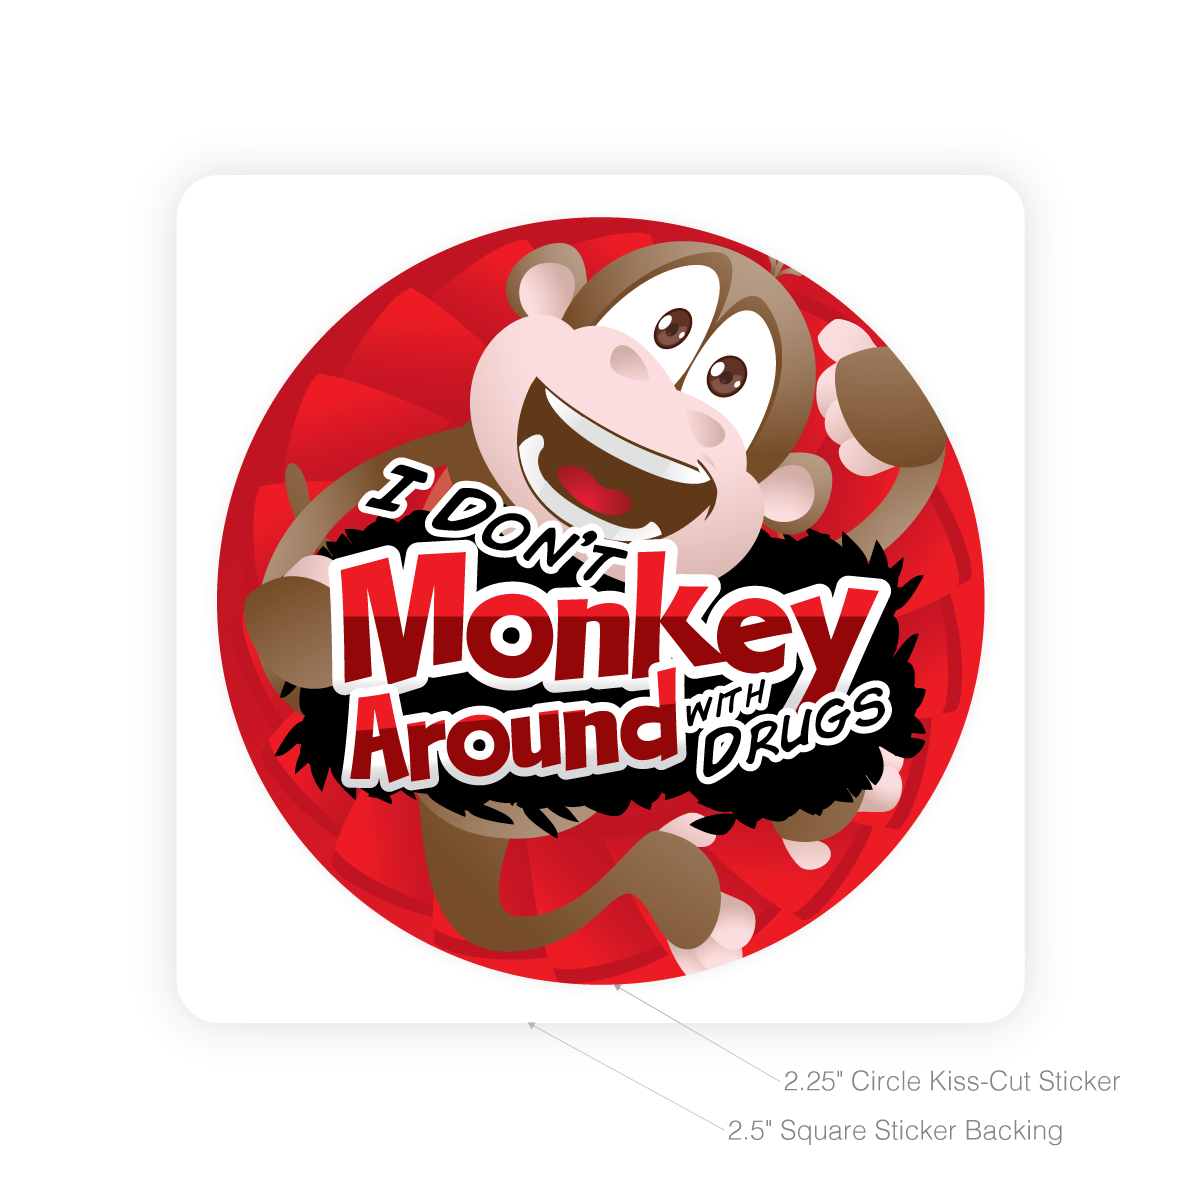 Round Sticker - I Don't Monkey Around With Drugs